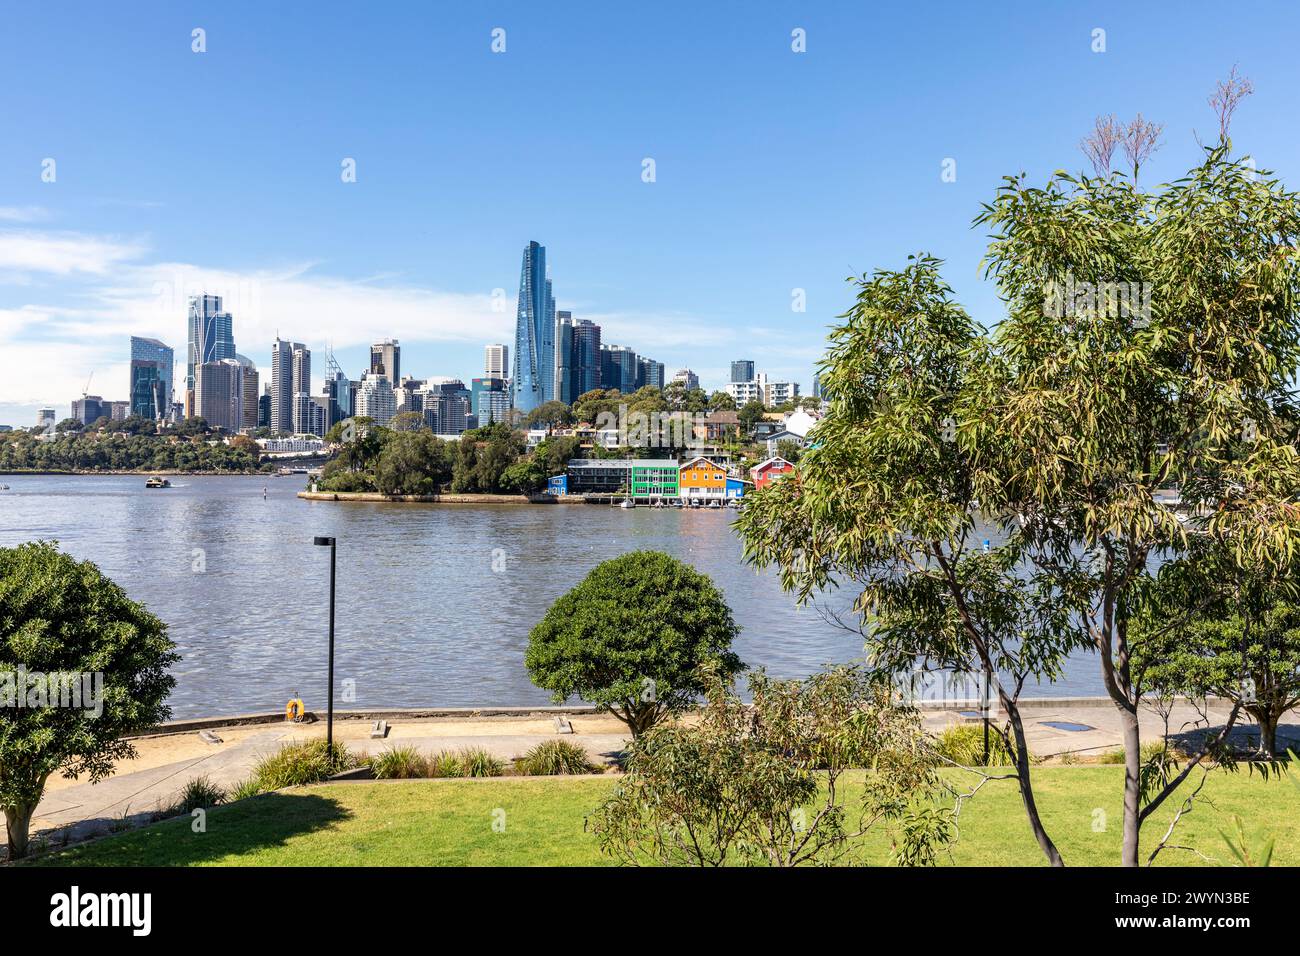 Sydney, Australien, Blick auf den Hafen von Sydney und die Wolkenkratzer im Stadtzentrum, vom industriellen Ballast Point Park auf der Balmain Peninsula, Australien Stockfoto